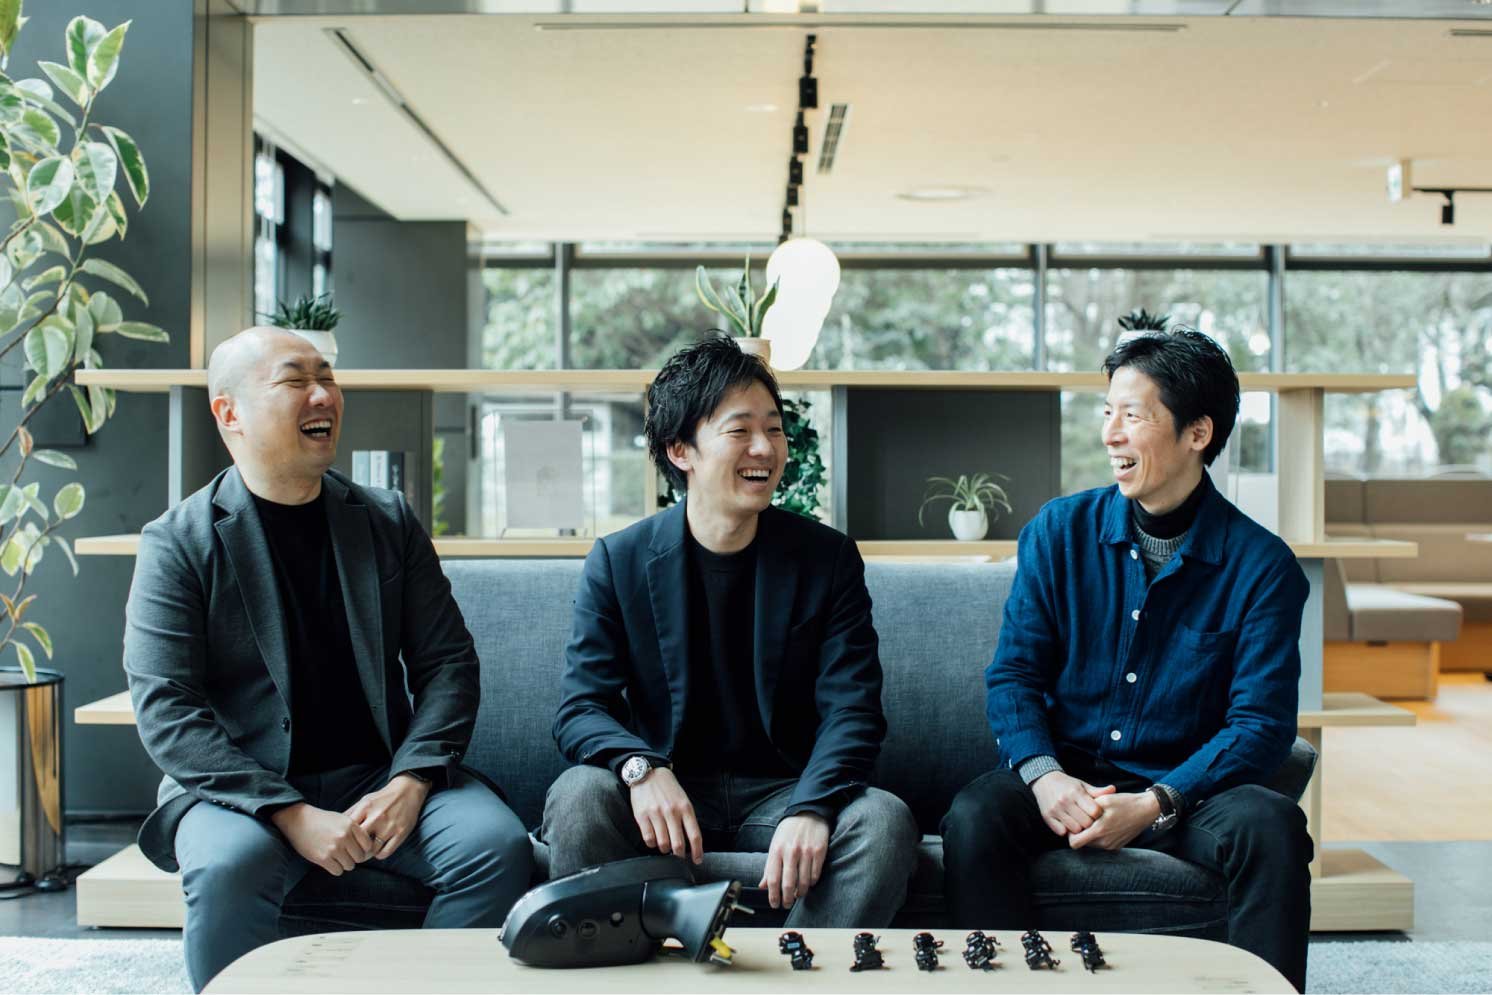 左から内田氏、秋江氏、渡辺氏 | Make New Magazine「未来の定番」をつくるために、パナソニックのリアルな姿を伝えるメディア